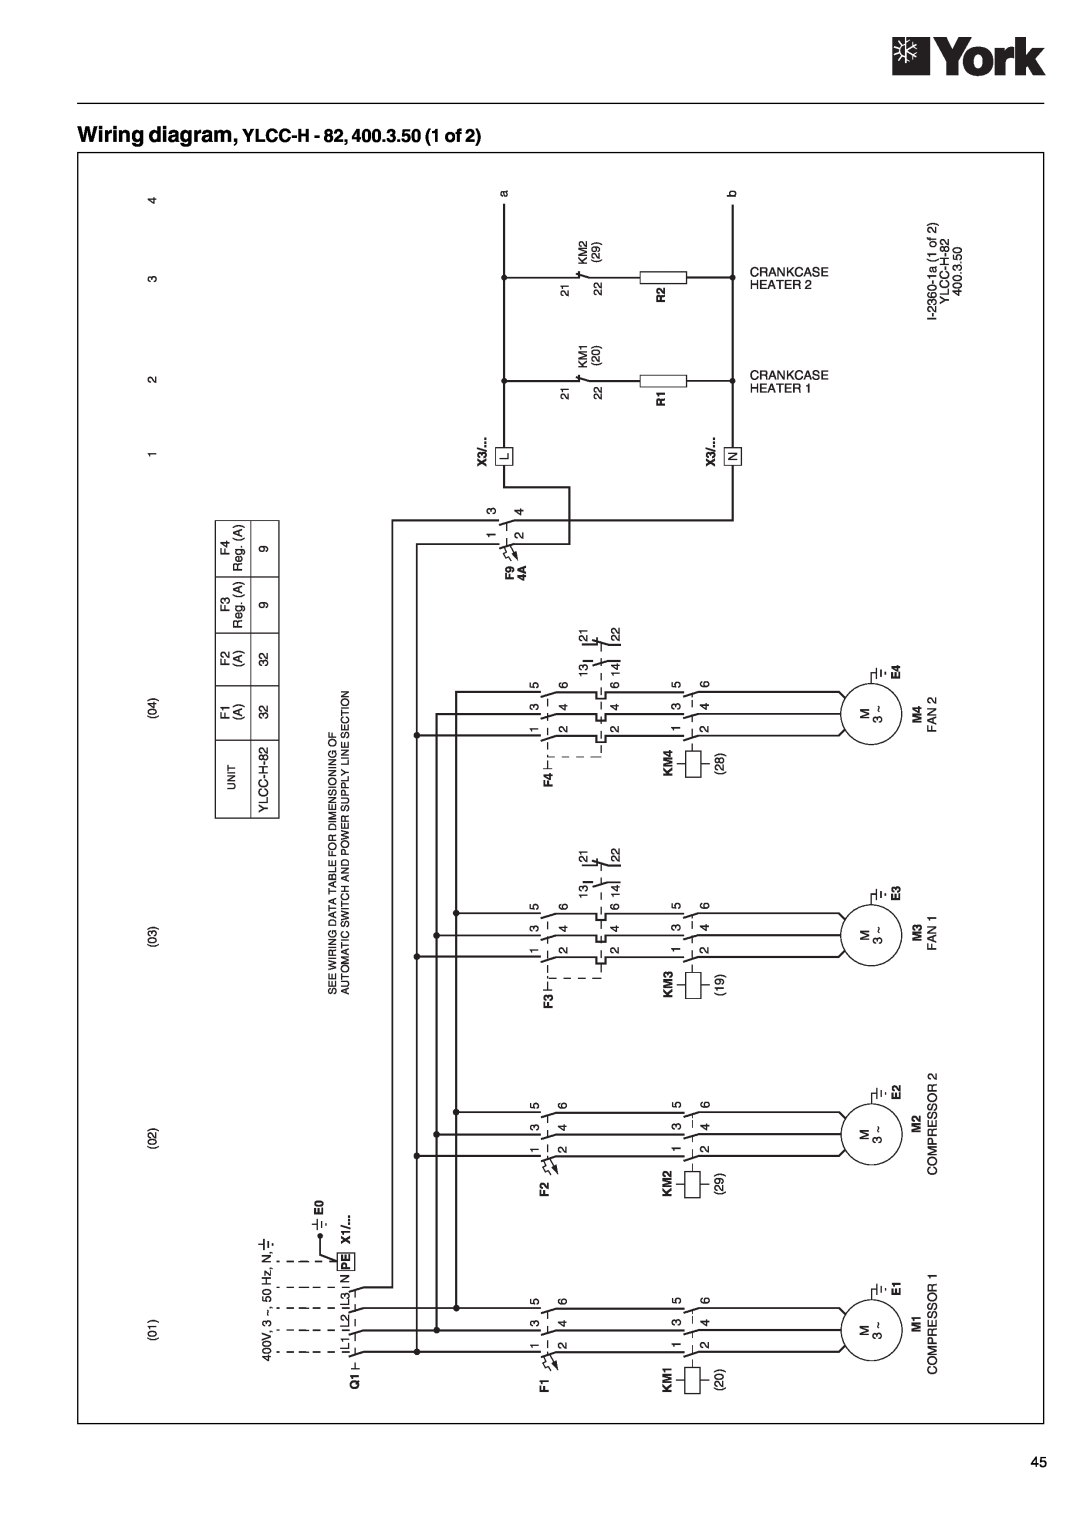 York YLCC-h, YLCC 42/62/82/102/112, 122, 152 manual Wiring diagram, YLCC-H- 82, 400.3.50 1 of 